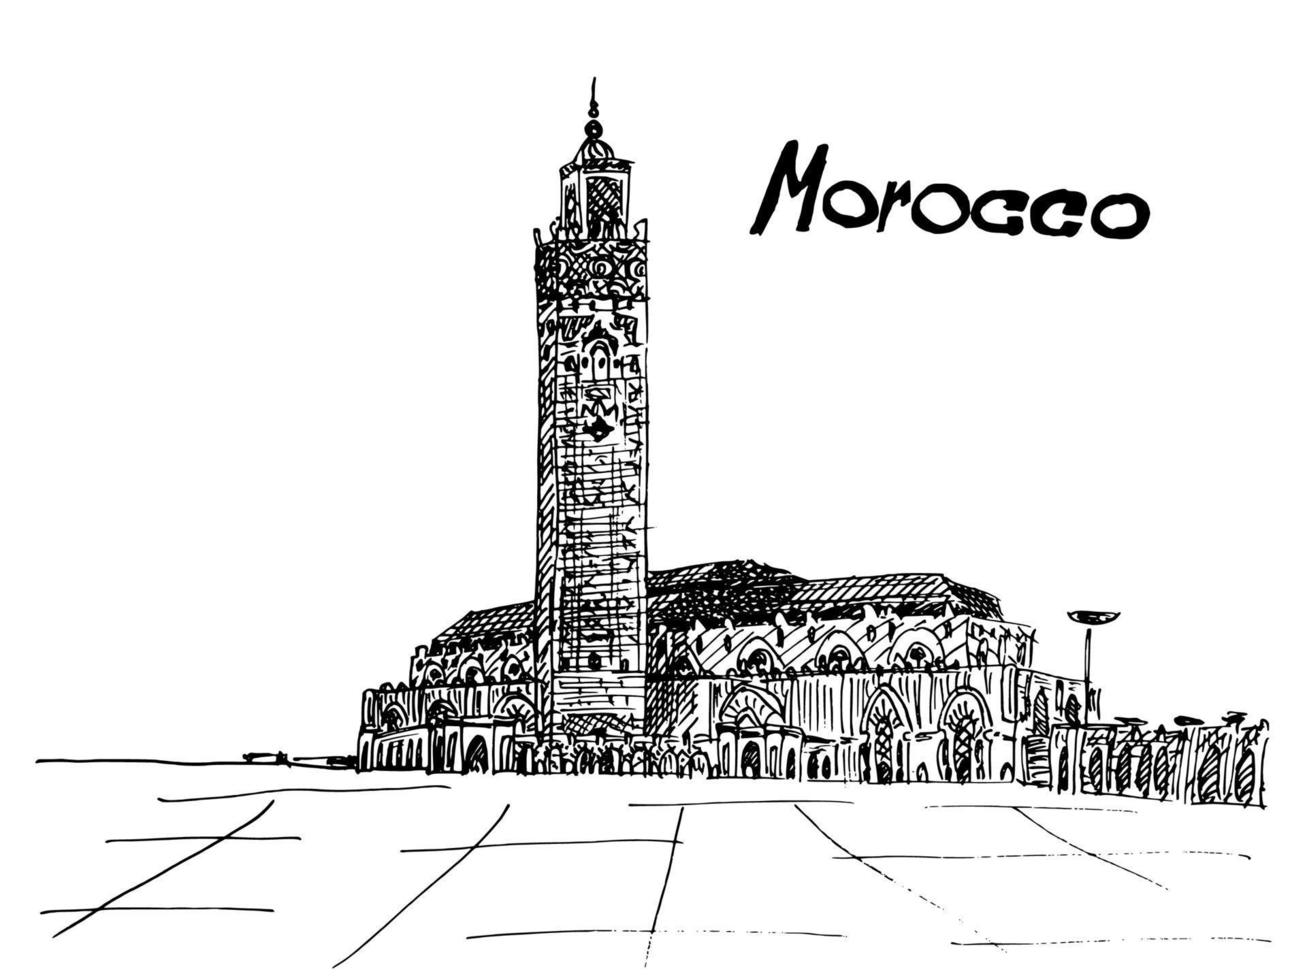 carte postale maroc encre noire sur fond blanc vecteur